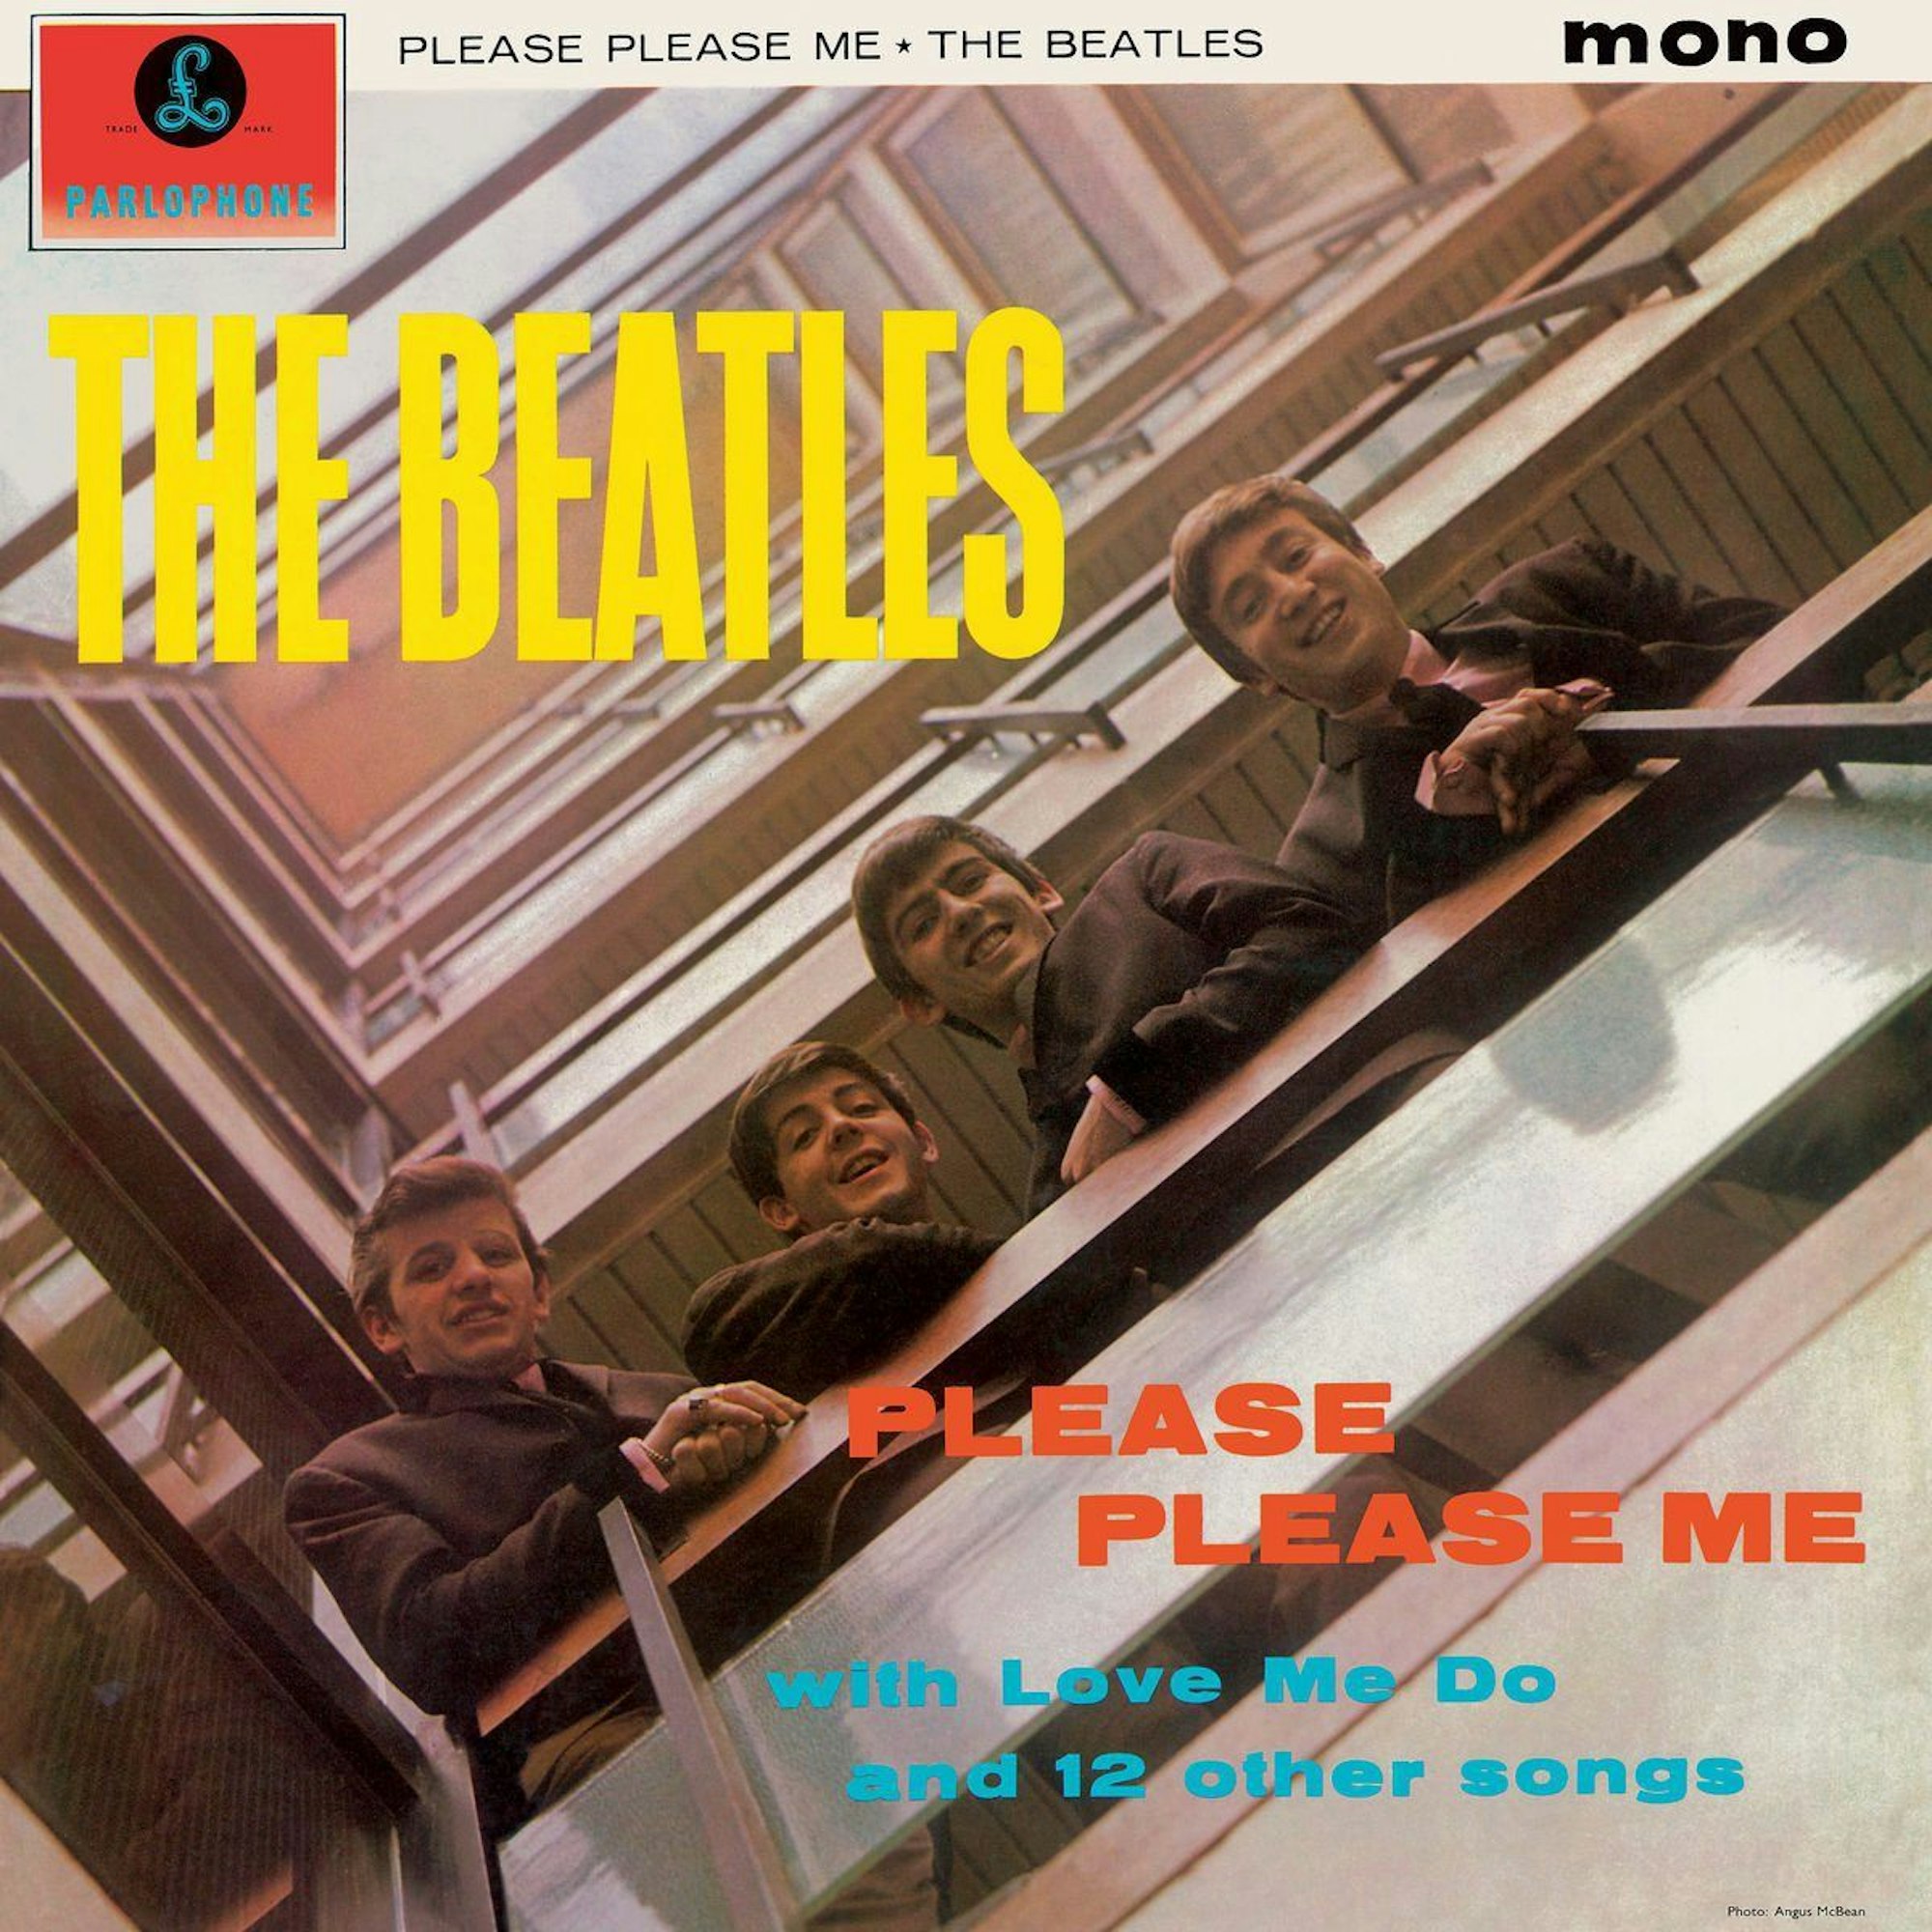 Auf dem Plattencover von „Please Please Me“ blicken die Beatles vom Balkon der Londoner EMI-Zentrale auf den Fotografen herab.